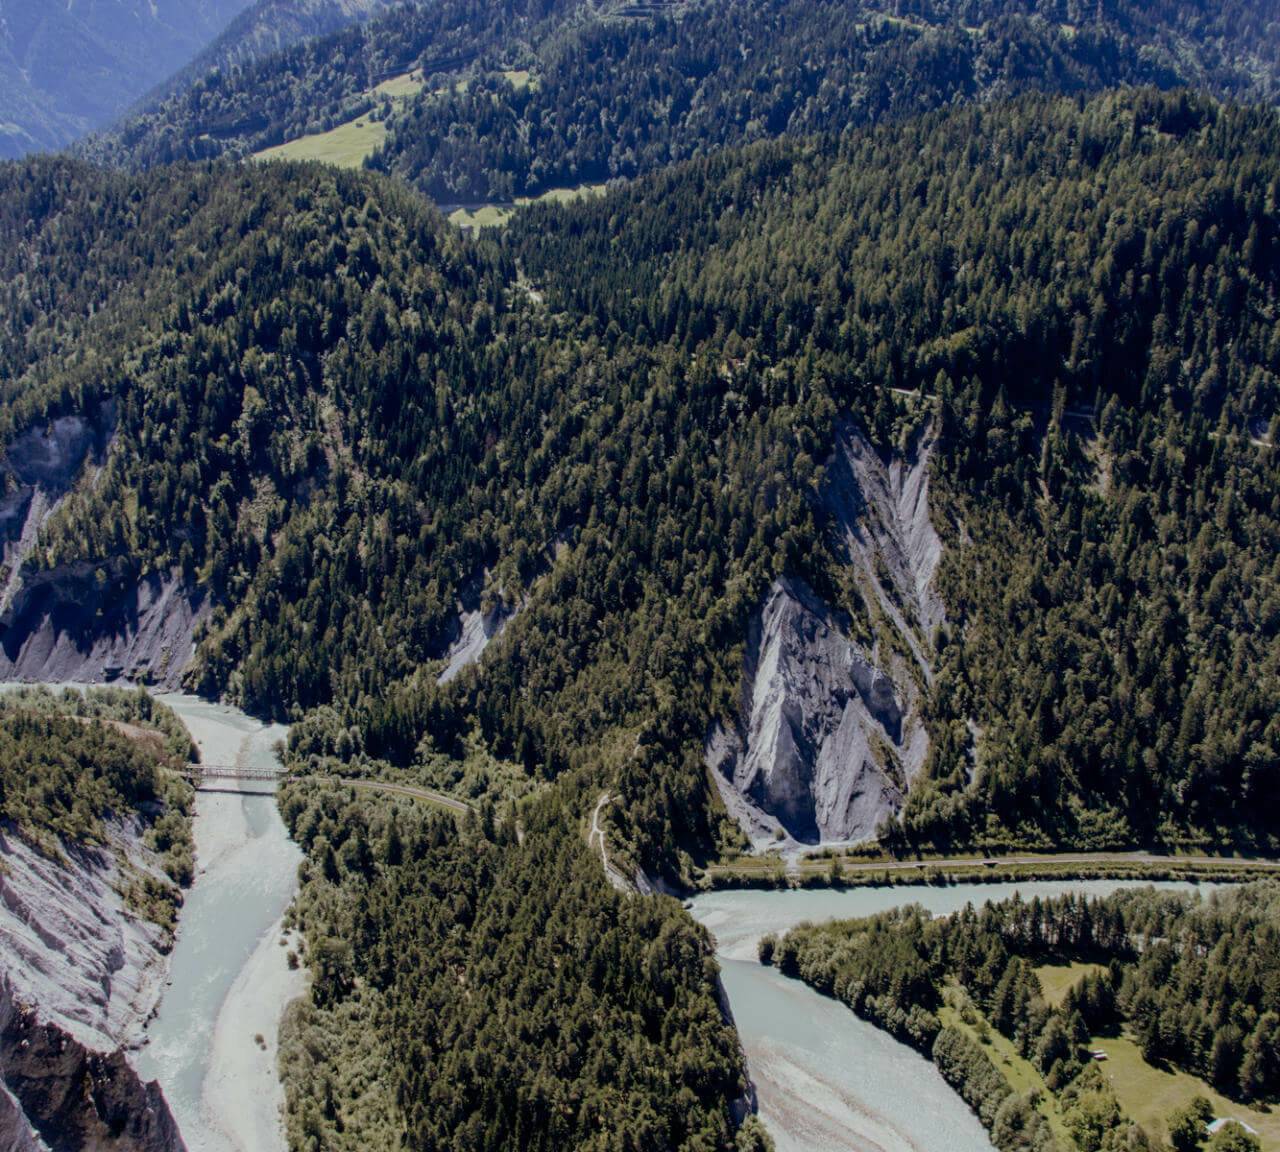 Ruinalta, eine Schlucht in der Schweiz